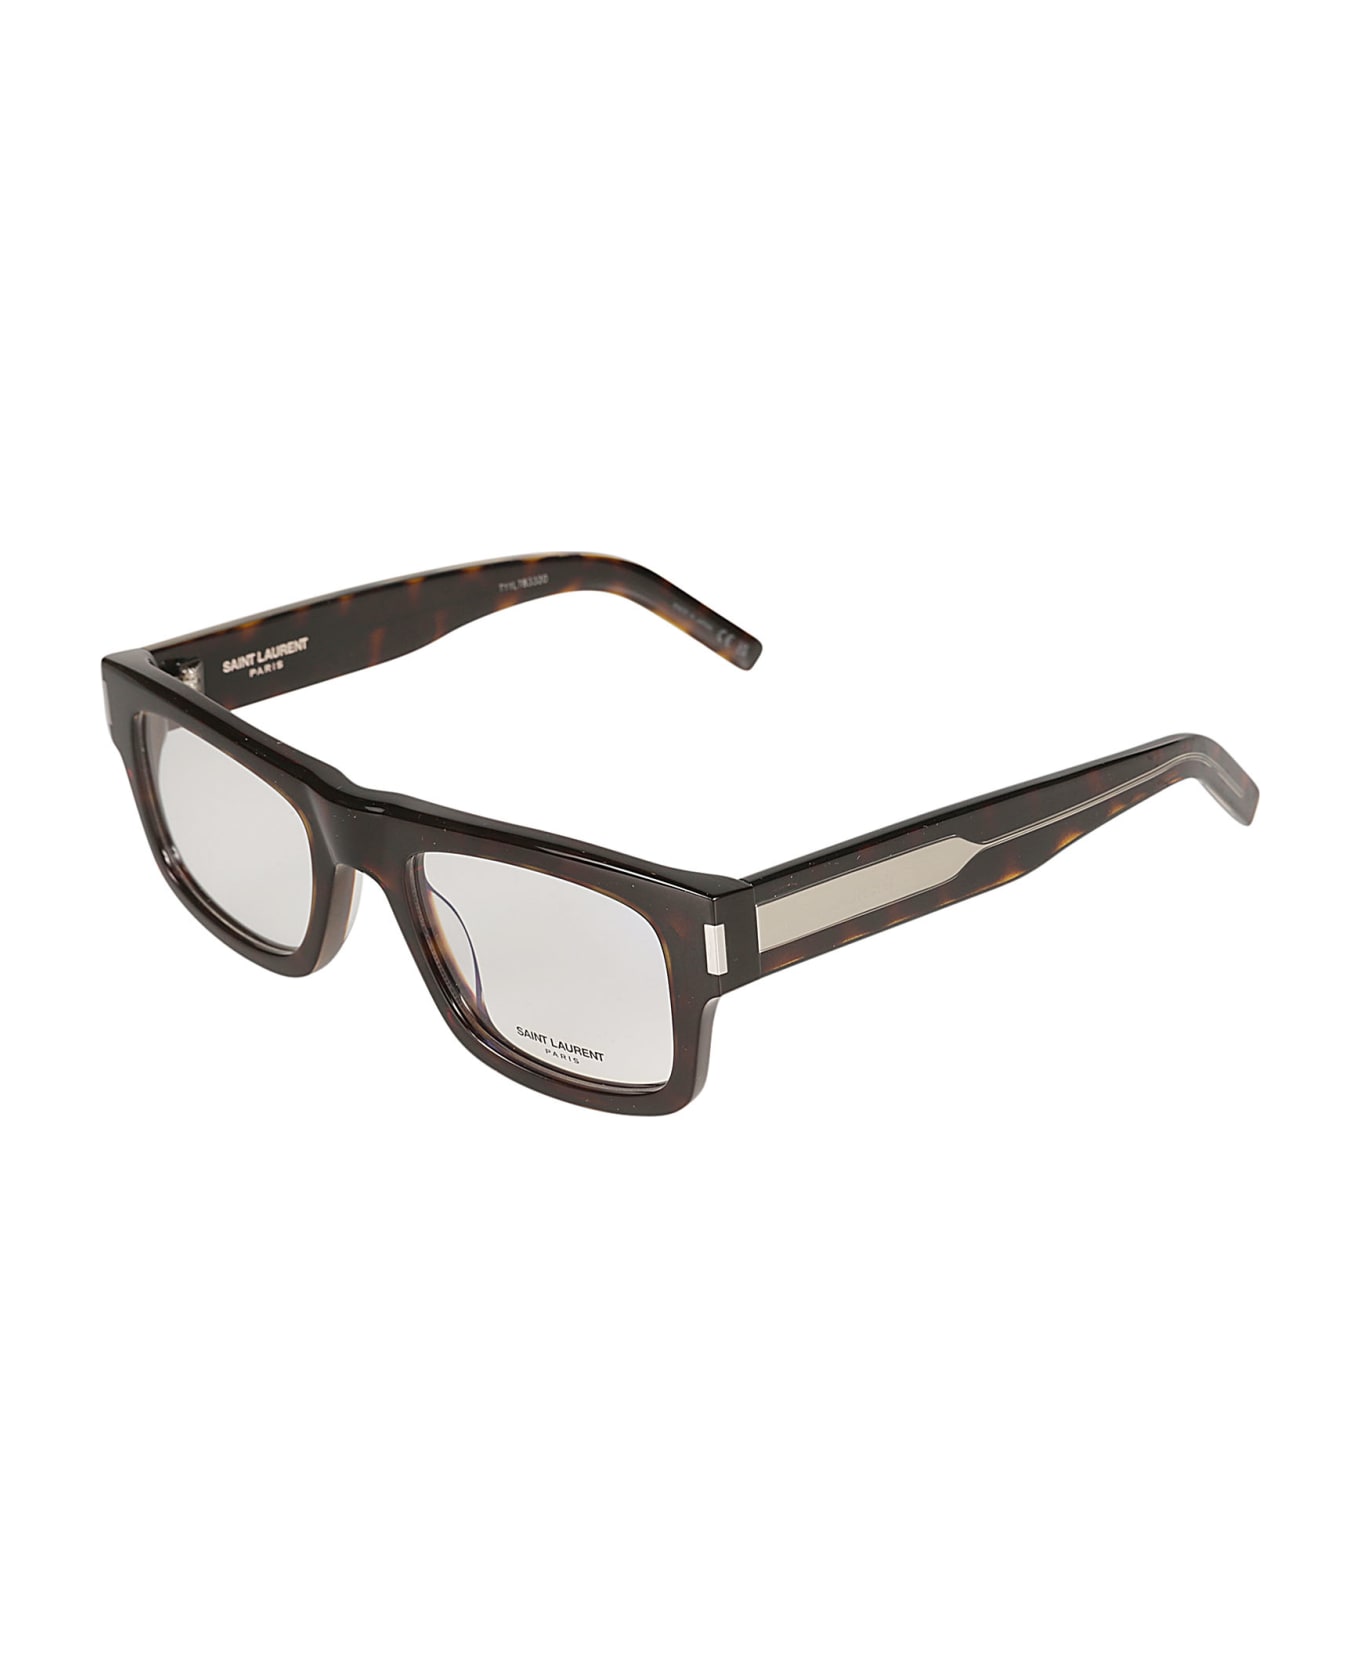 Saint Laurent Eyewear Square Frame Flame Effect Glasses - Havana/Crystal/Transparent